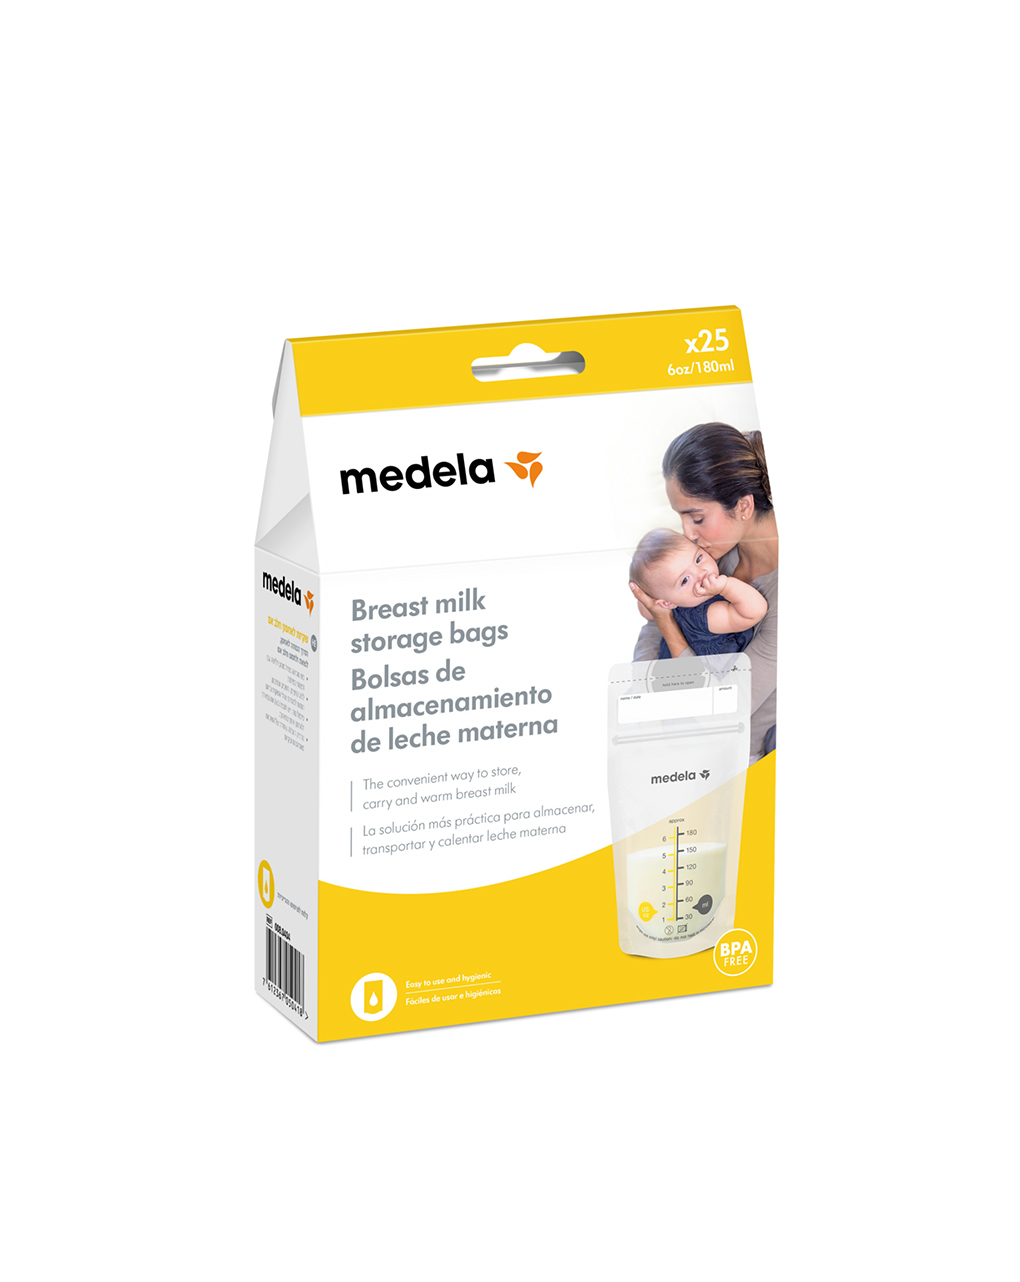 Medela breast milk storage bags σακουλάκια φύλαξης μητρικού γάλακτος, 25 τεμ. 180ml